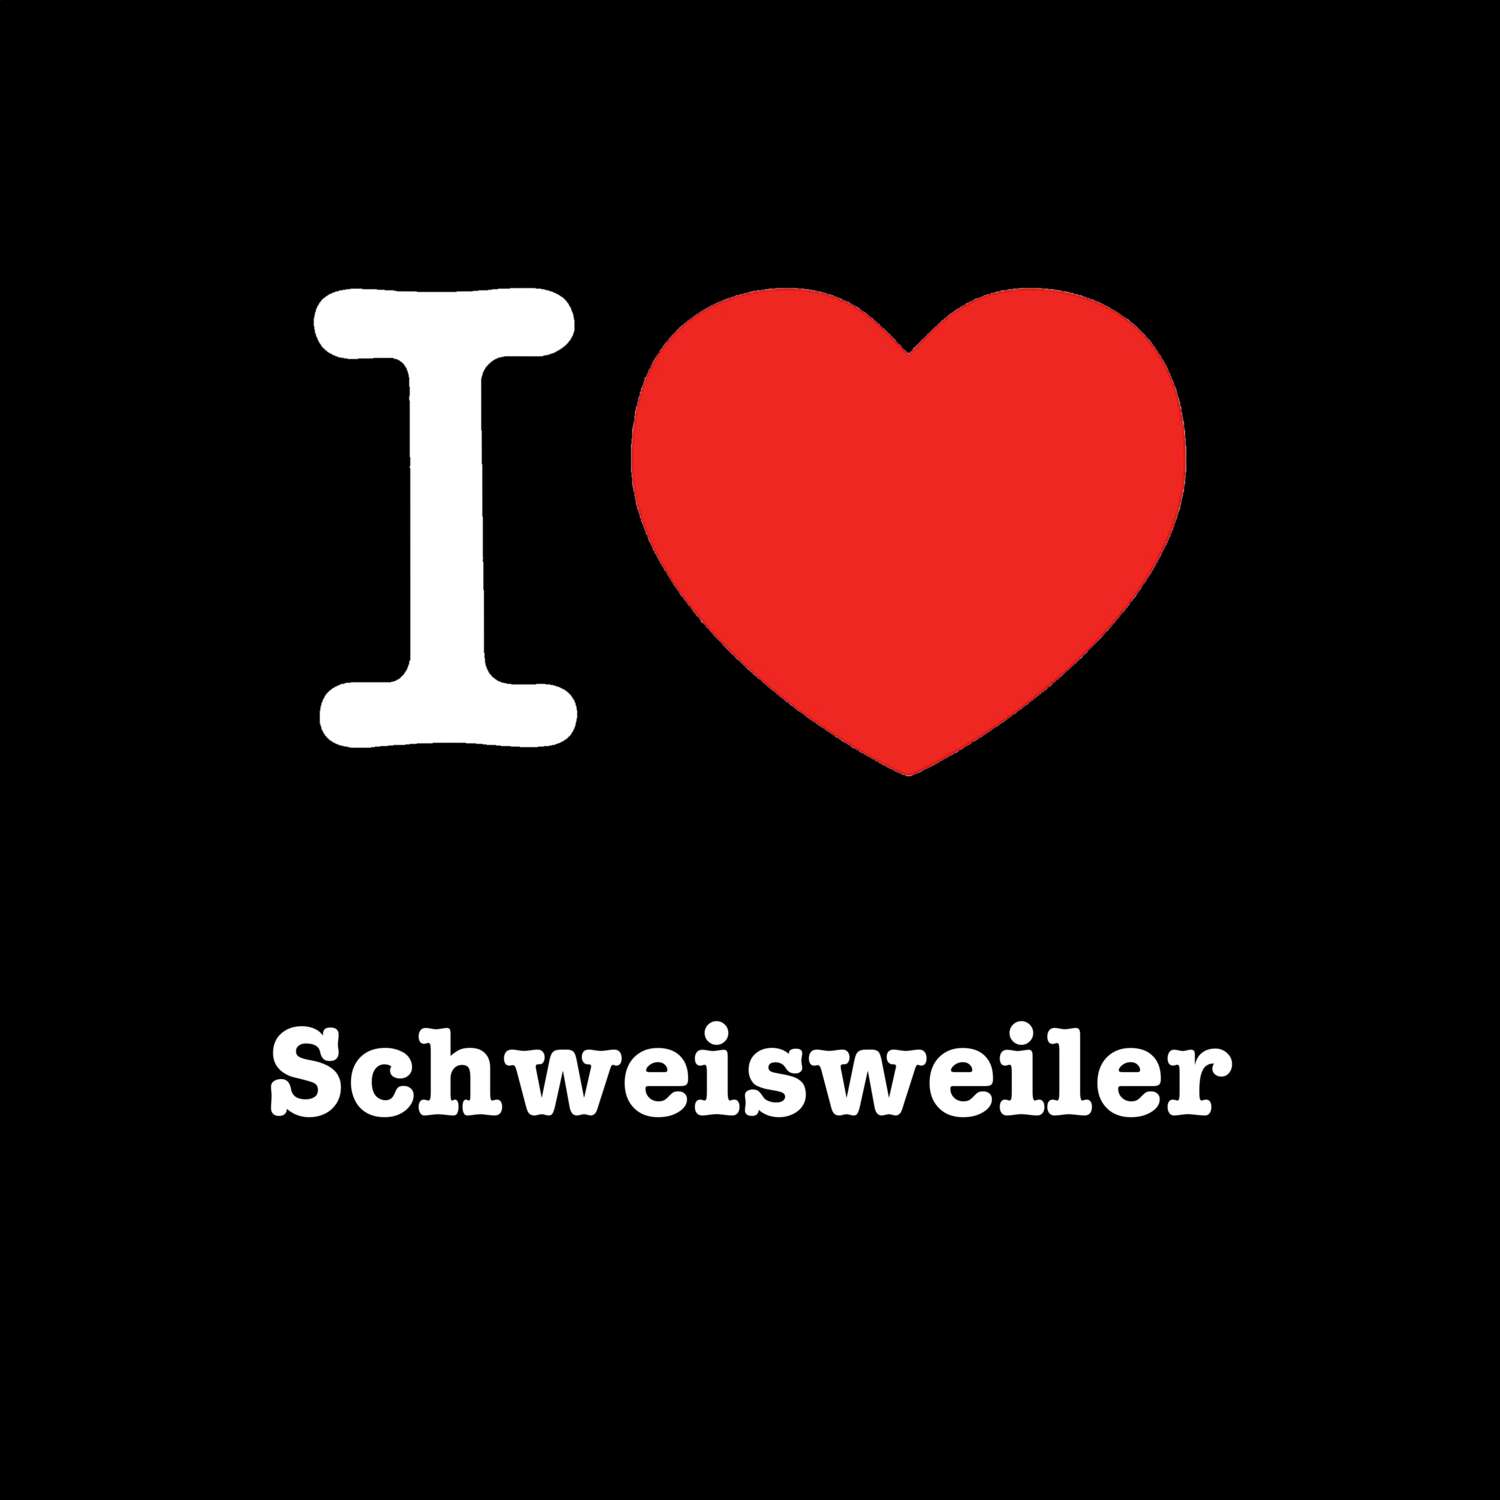 Schweisweiler T-Shirt »I love«